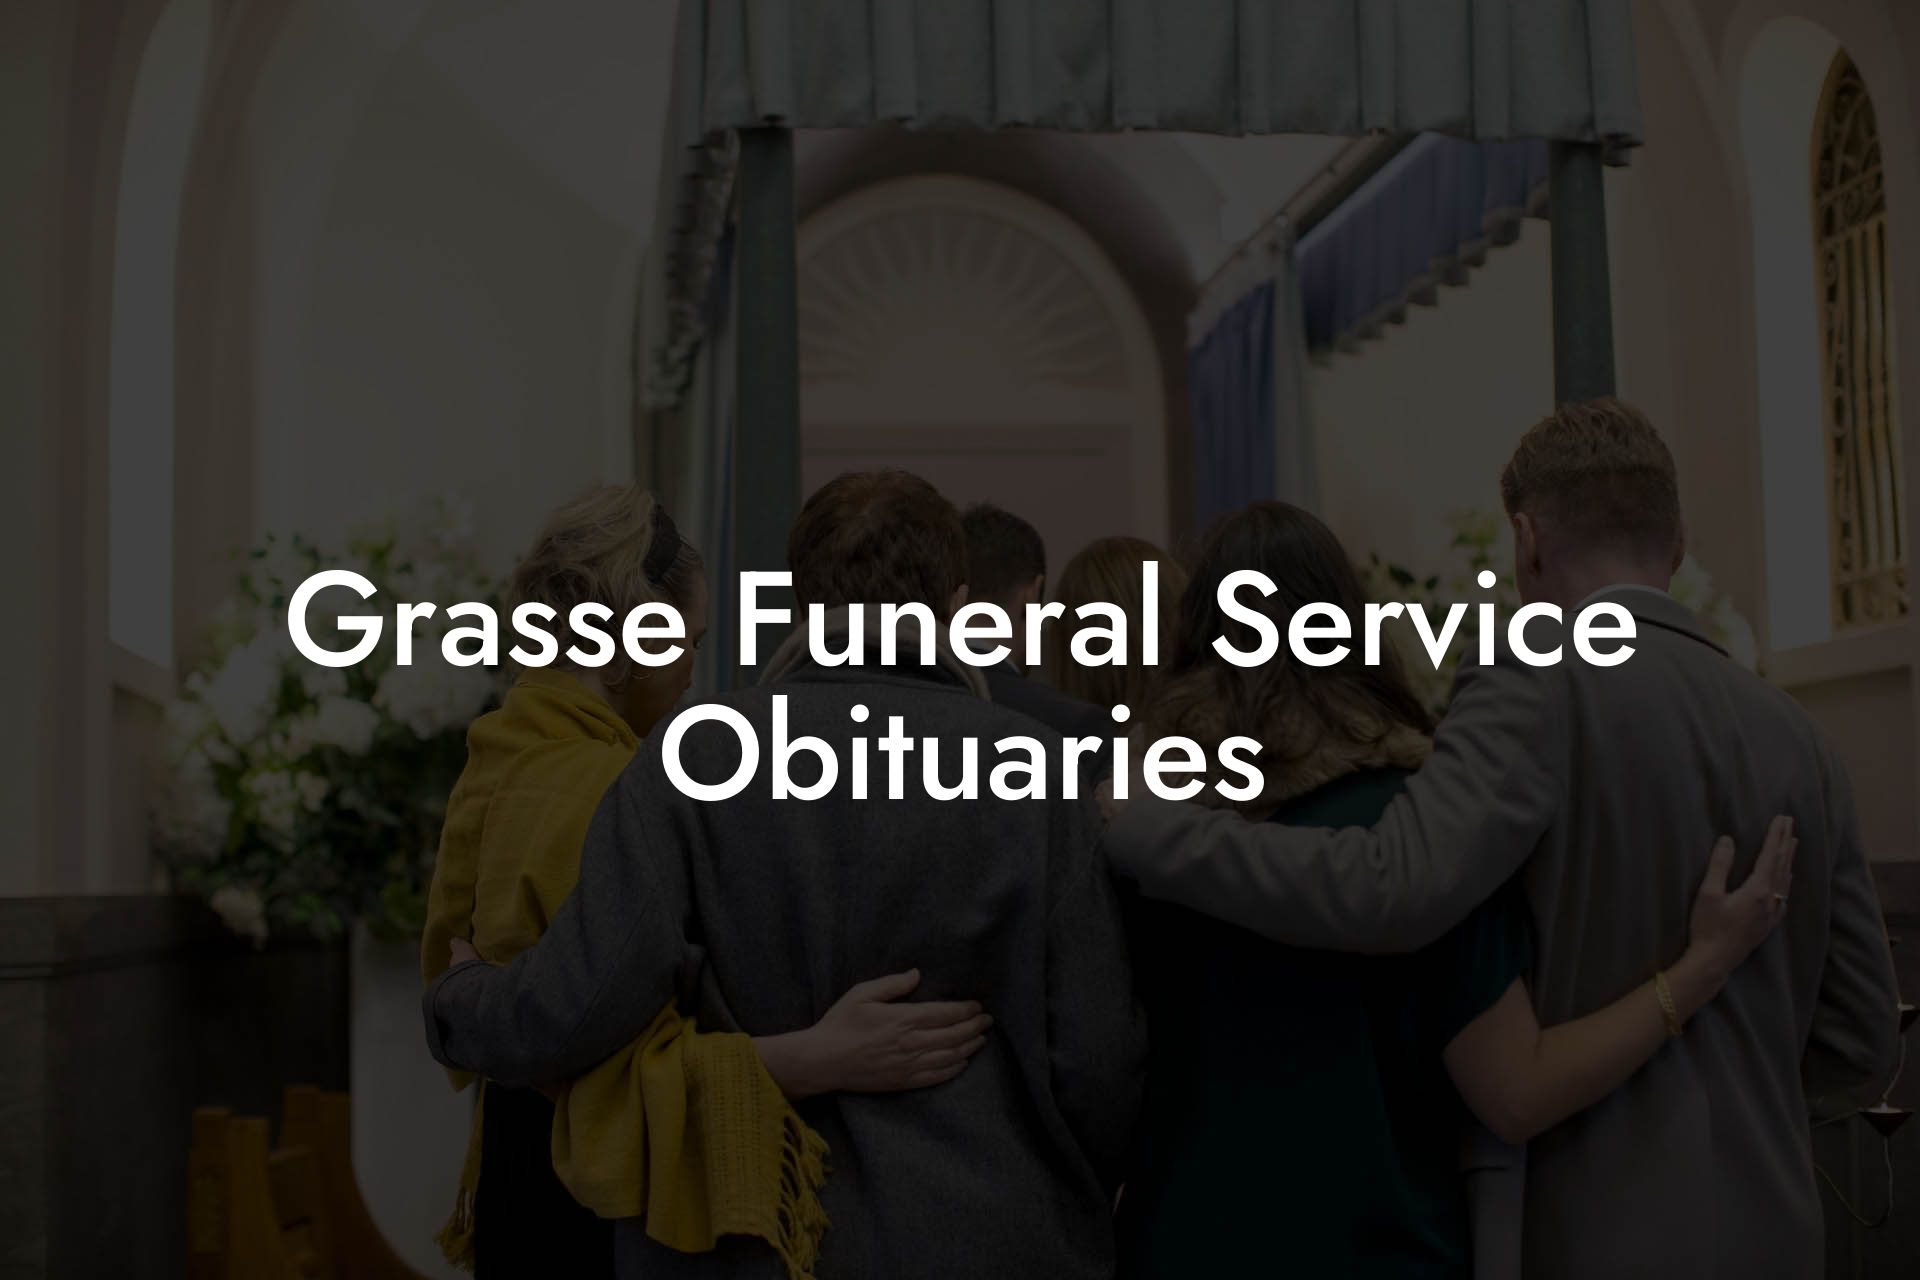 Grasse Funeral Service Obituaries